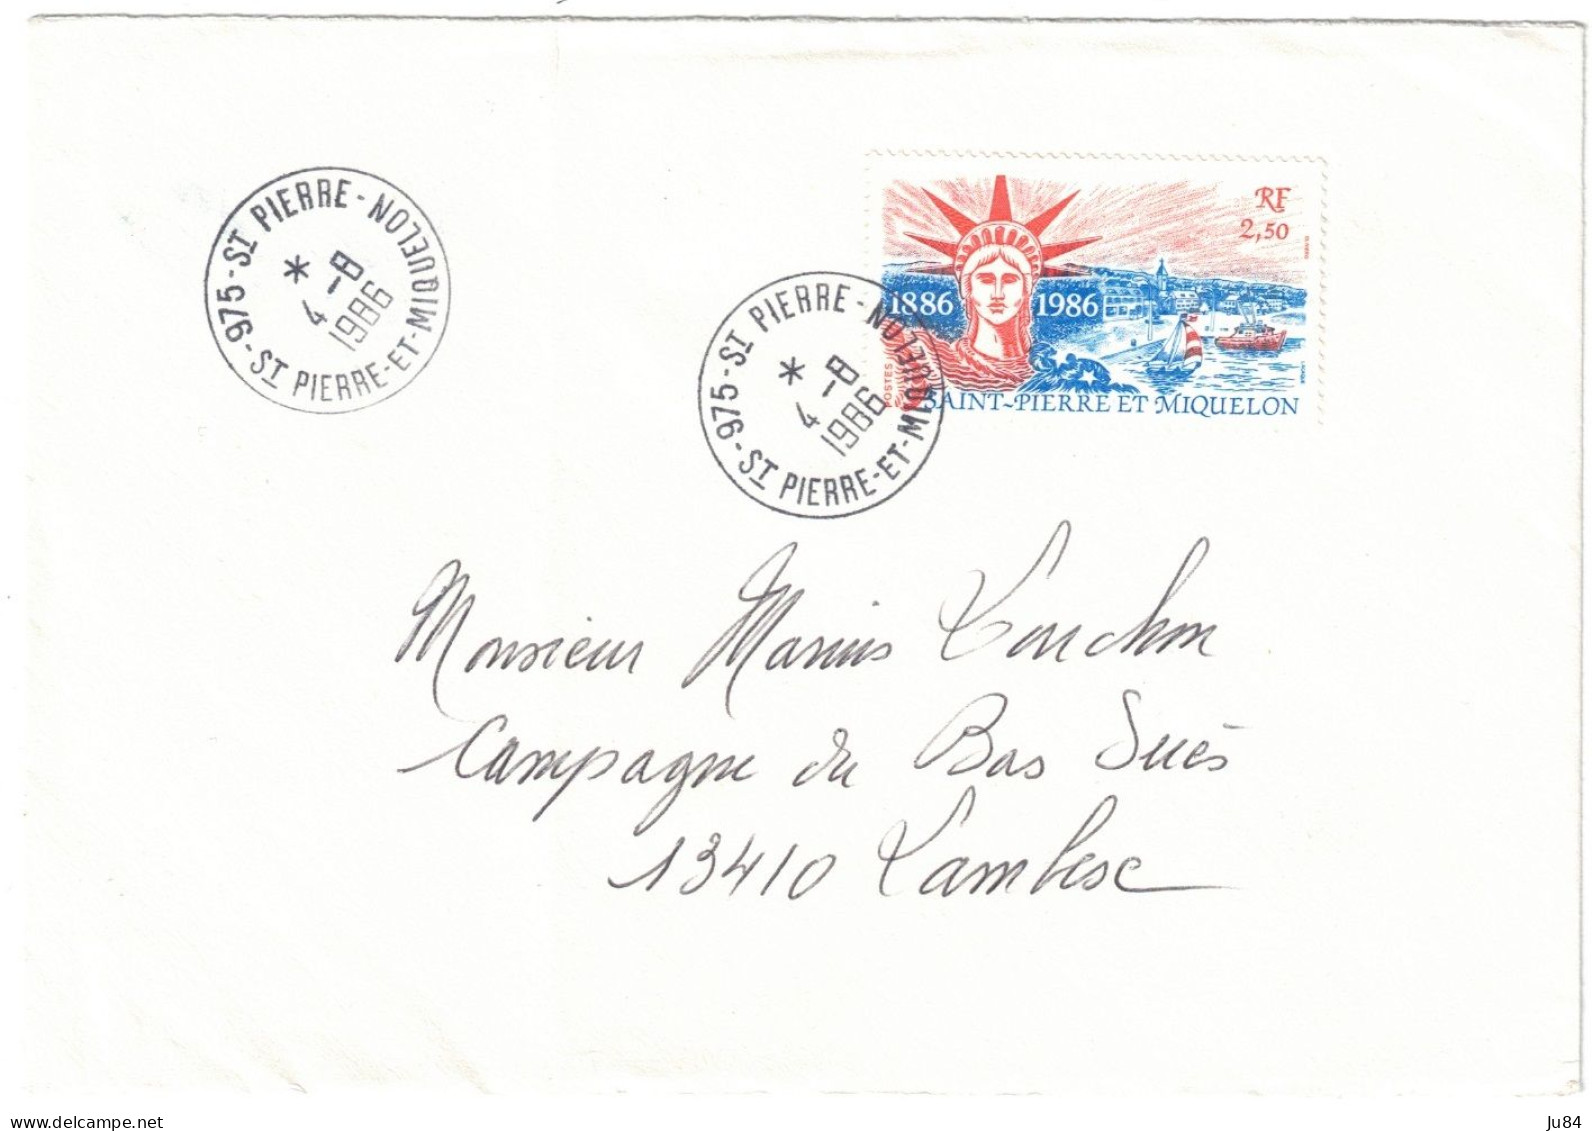 Saint-Pierre Et Miquelon - St Pierre - Secteur 975 - 2,50 RF Seul Sur Lettre - Lettre Pour La France - 4 Août 1986 - Covers & Documents